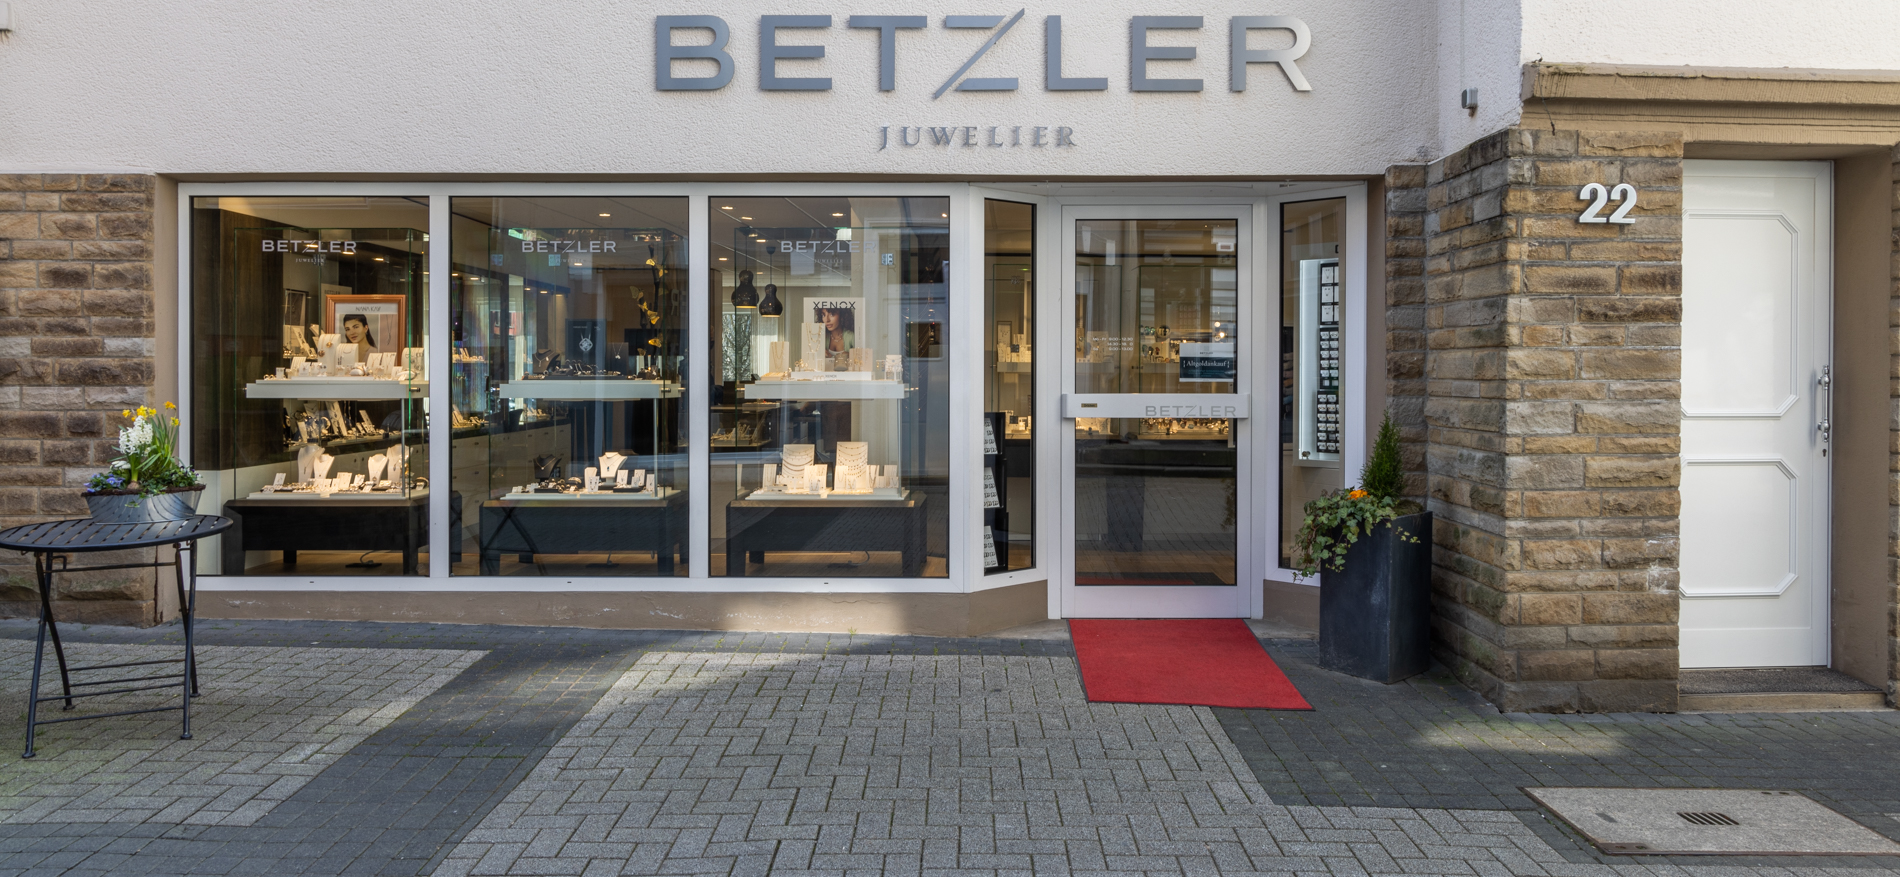 Juwelier Betzler | Altena (DE) - Juweliers